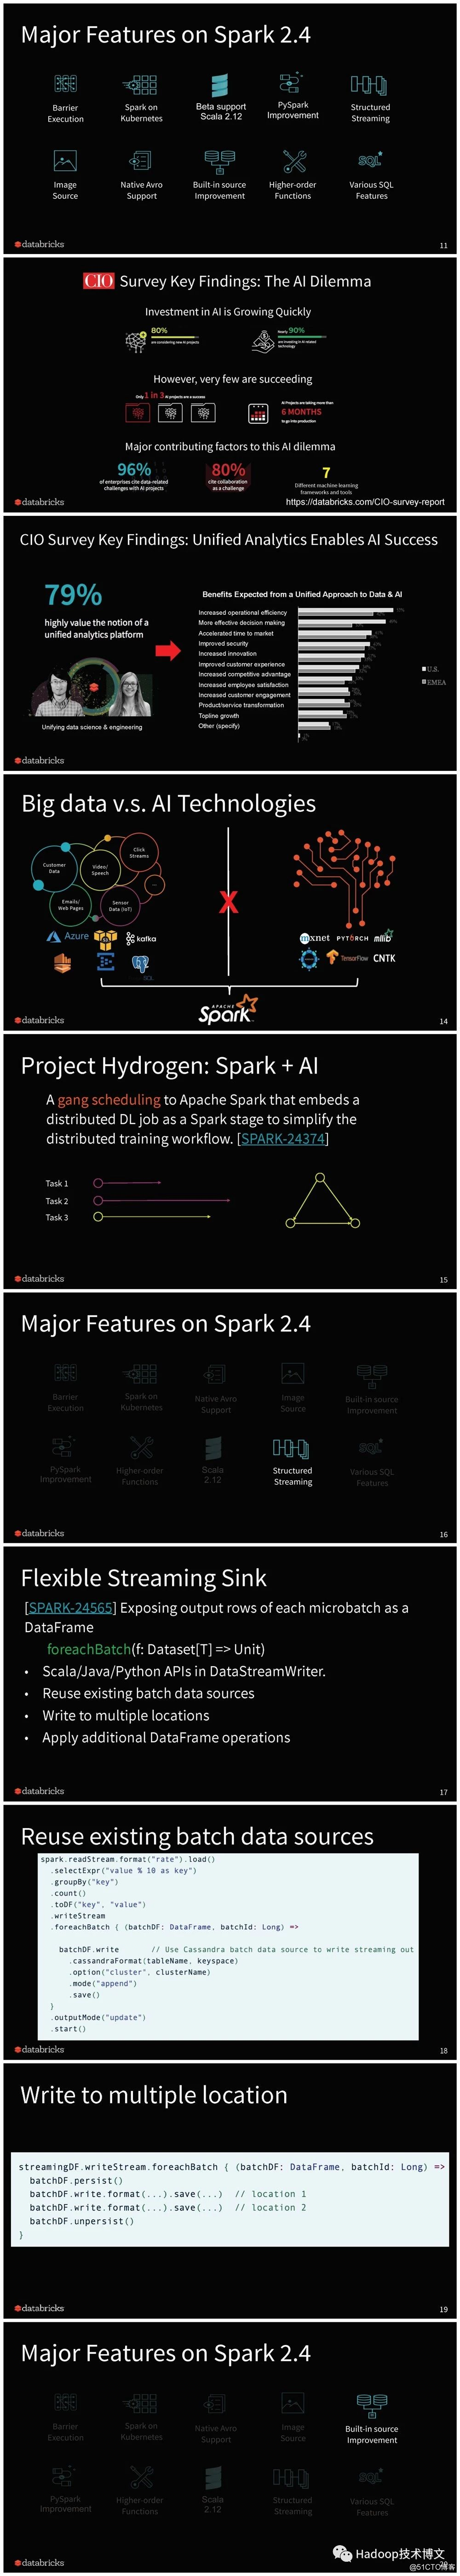 Apache Spark 2.4 回顾以及 3.0 展望